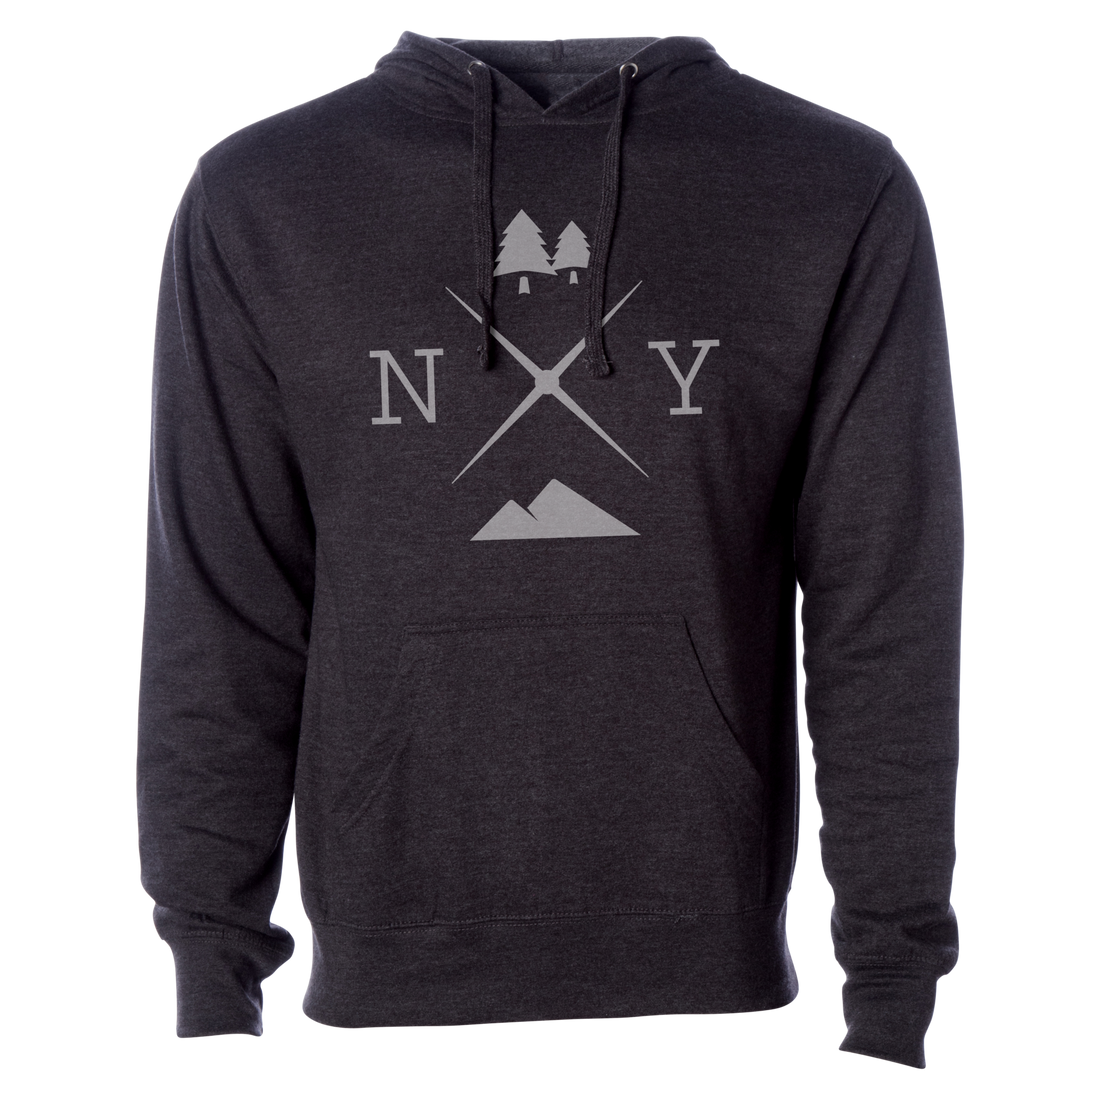 New York Hoodie Sweatshirt